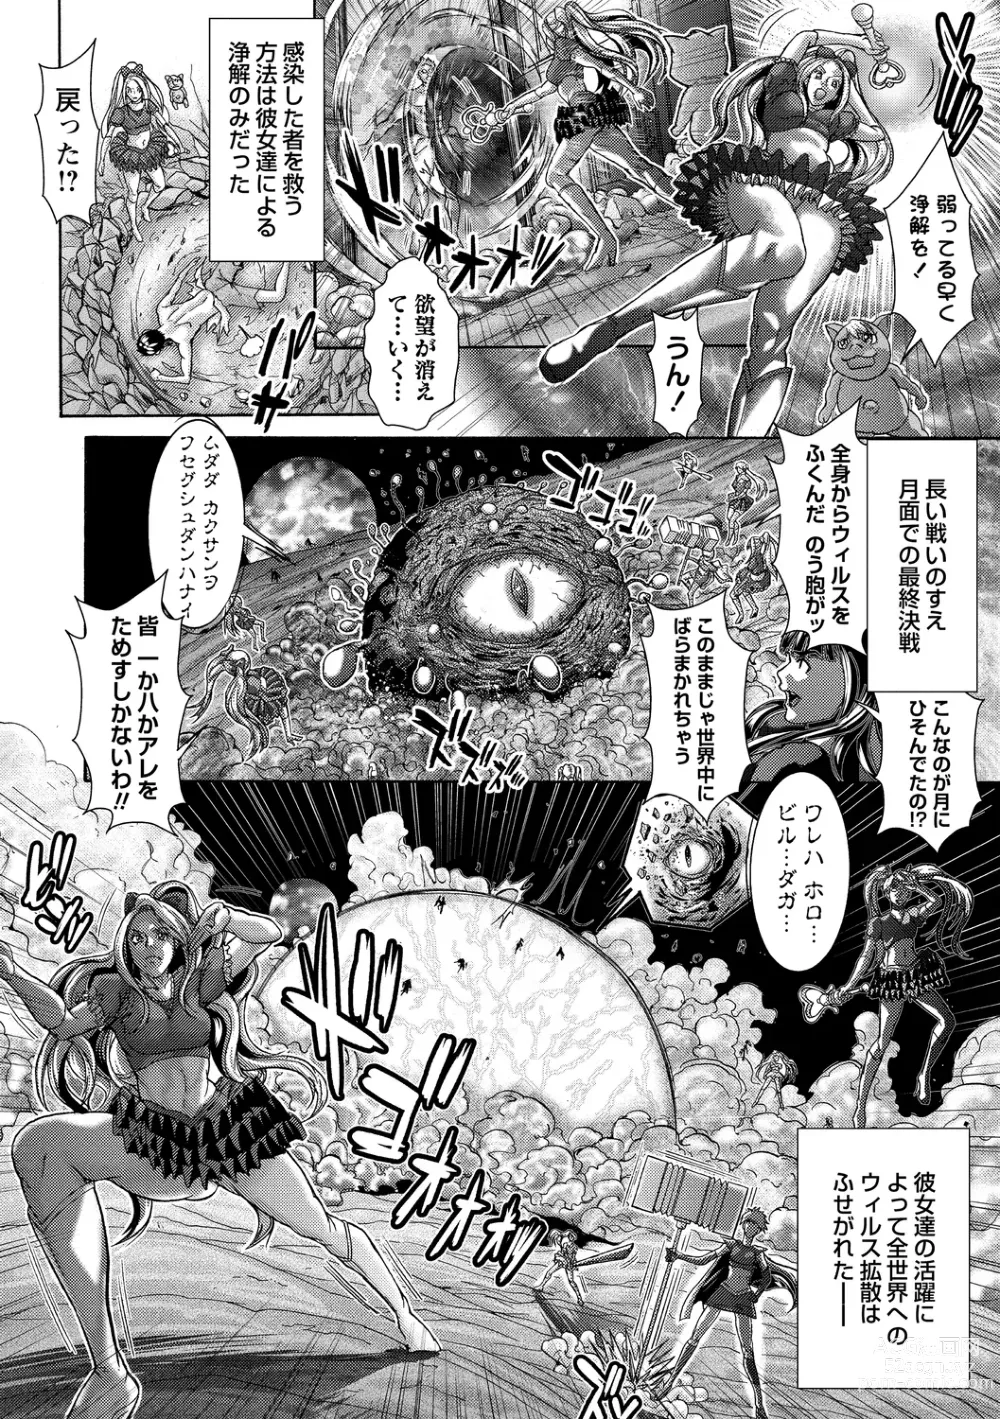 Page 2 of manga Magical mature woman 1-2